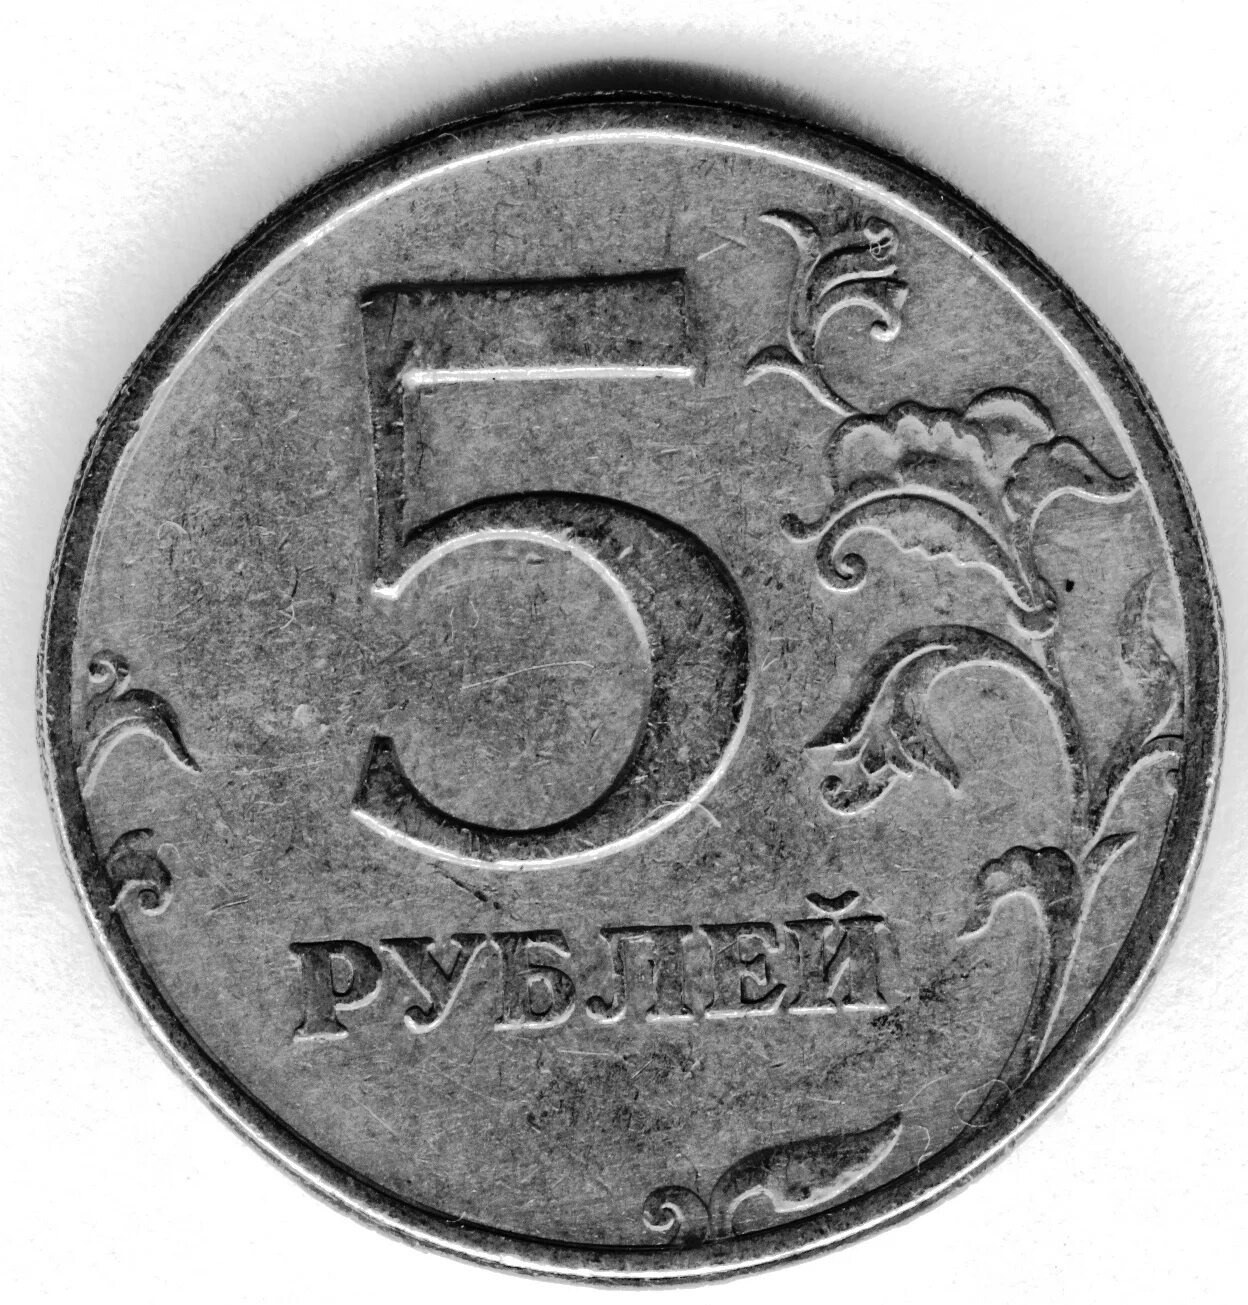 Вместо 5 рублей. 5 Рублей. Монеты 5 рублей современной. Пять рублей. Старые монеты 5 рублей.